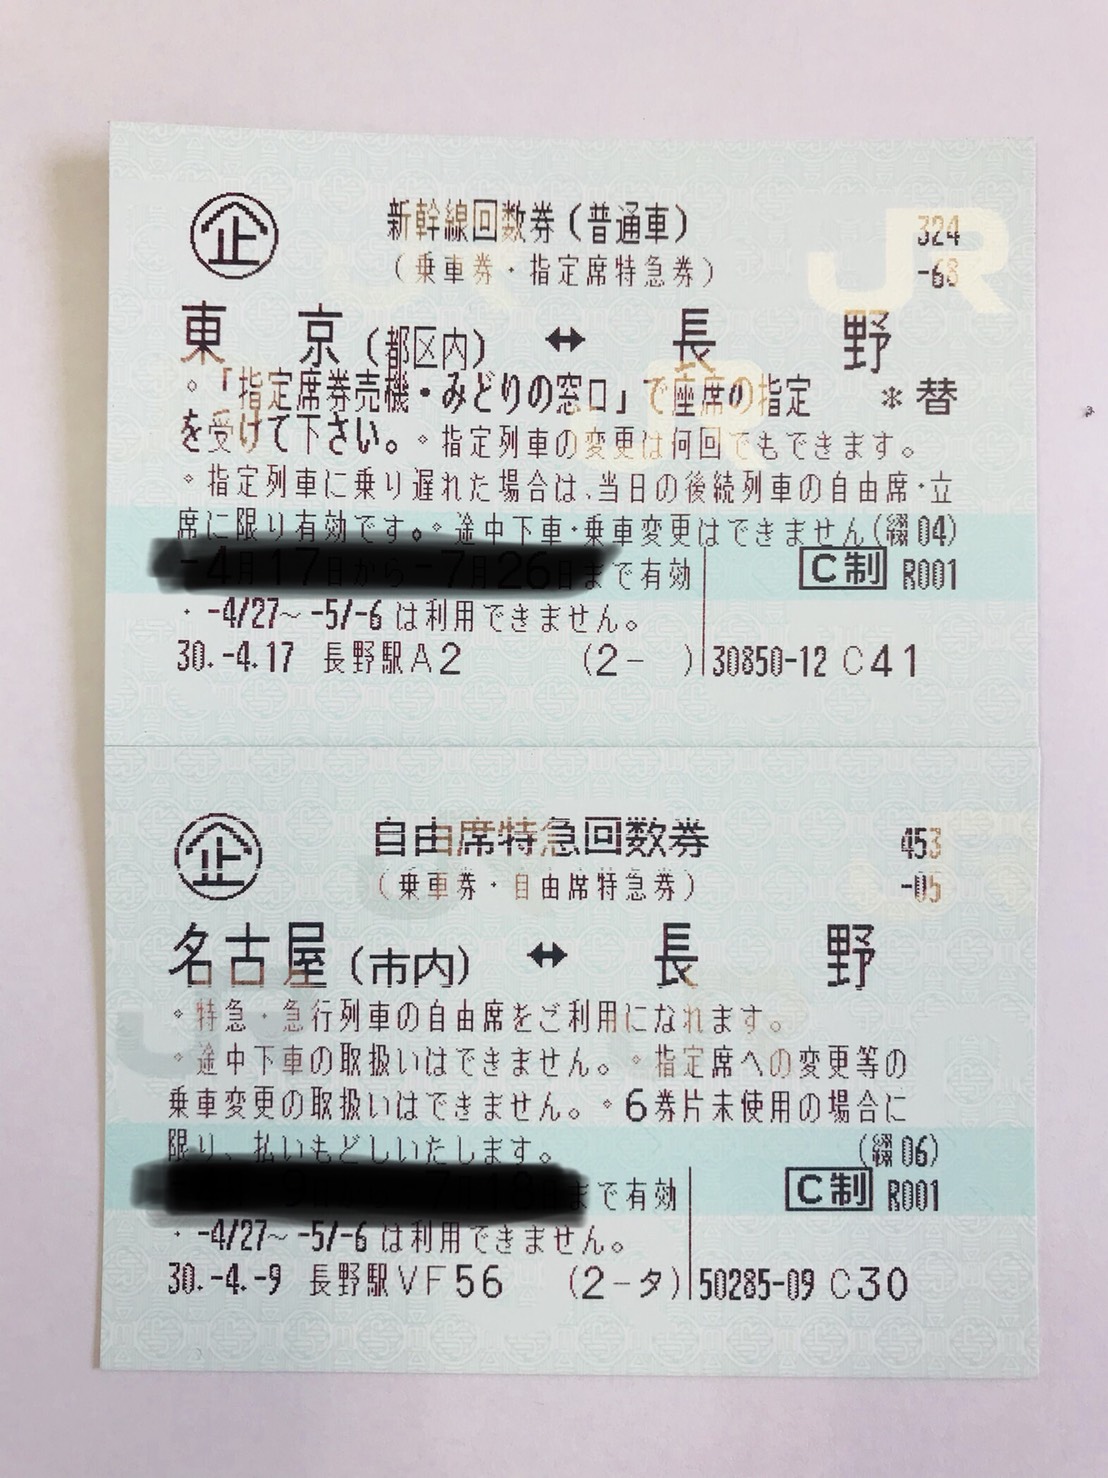 長野 東京 新幹線回数券 12/19まで有効